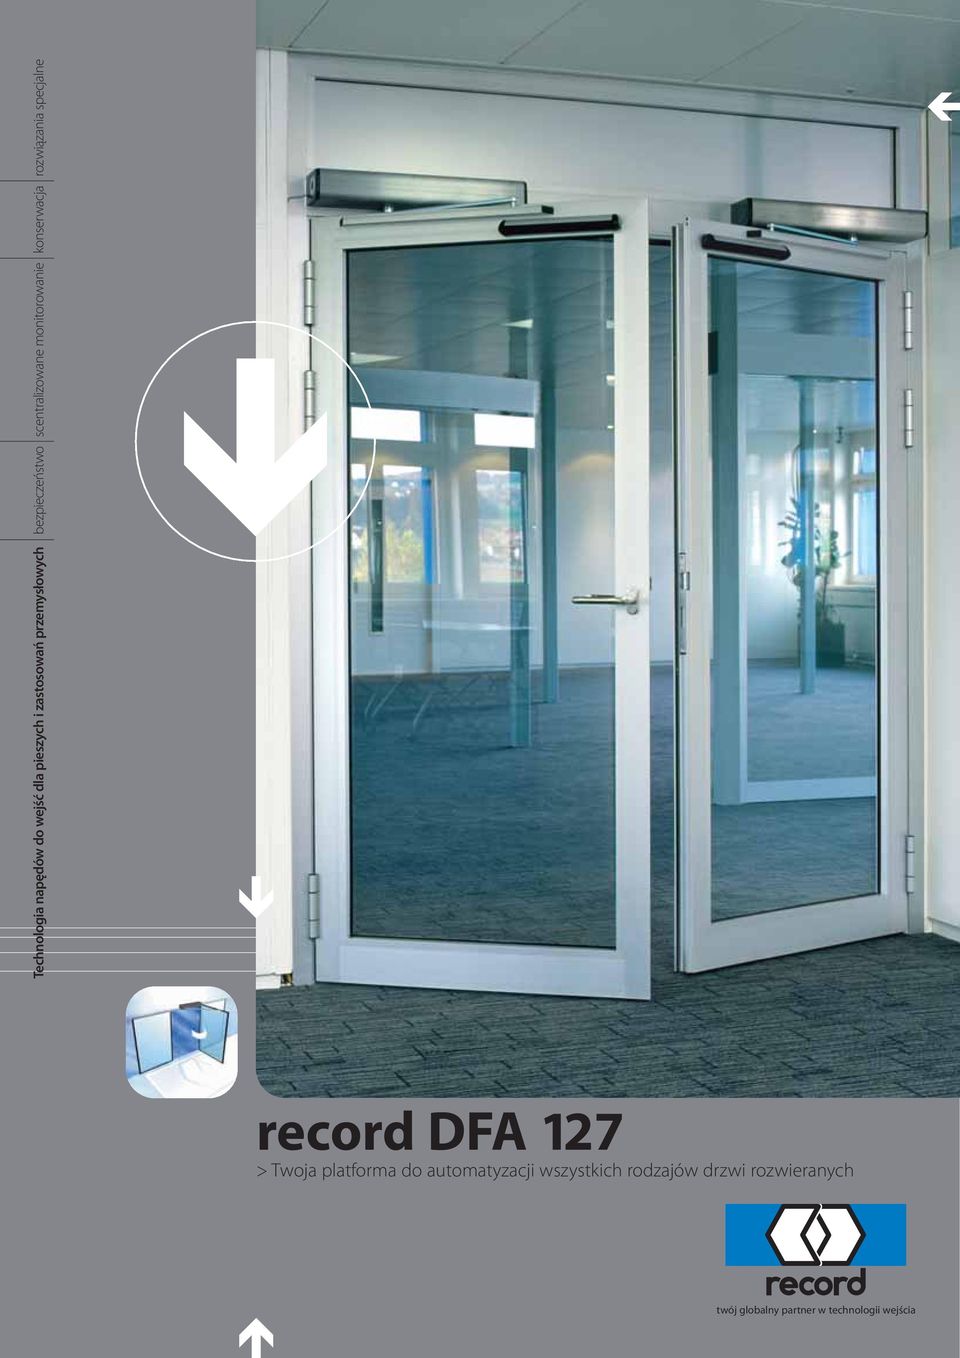 specjalne record DFA 127 > Twoja platforma do automatyzacji